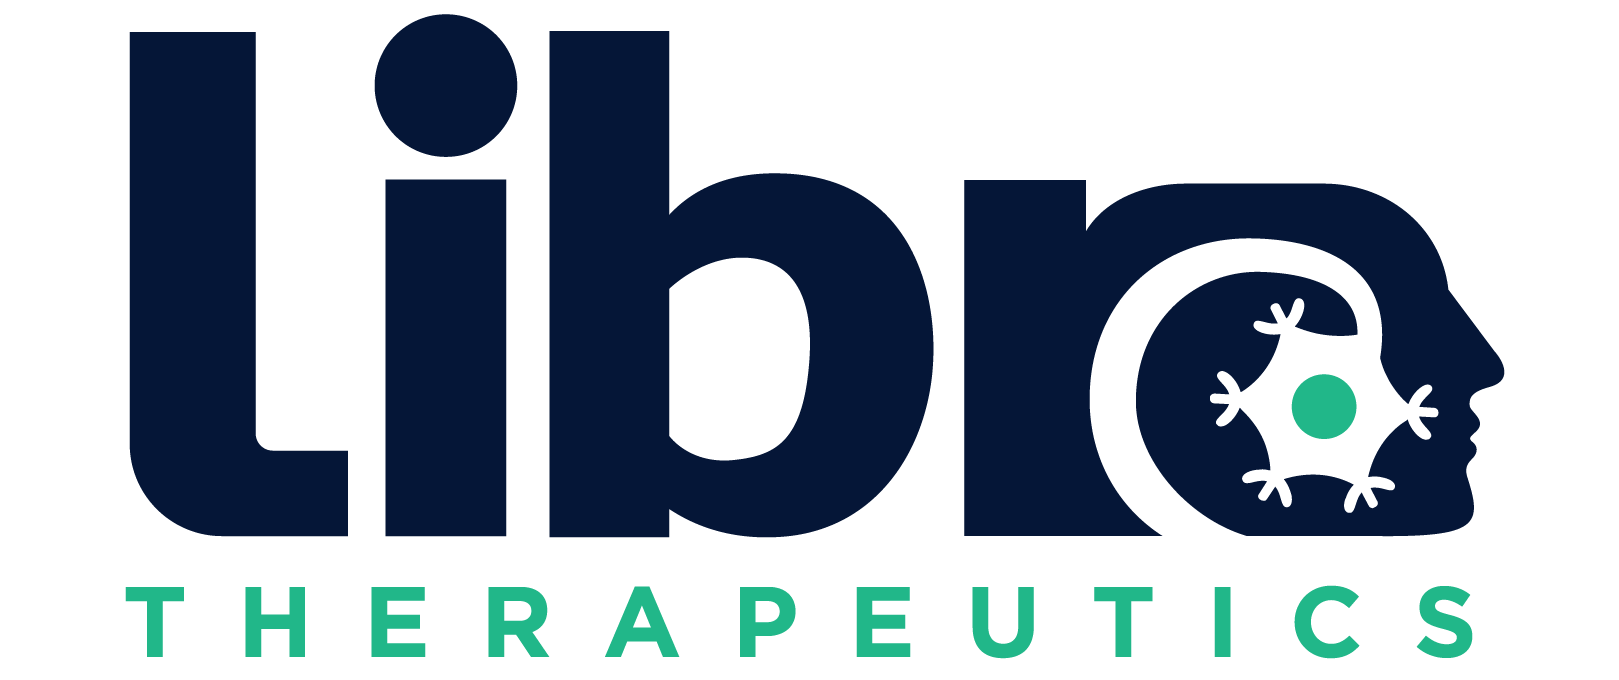 Libra Therapeutics